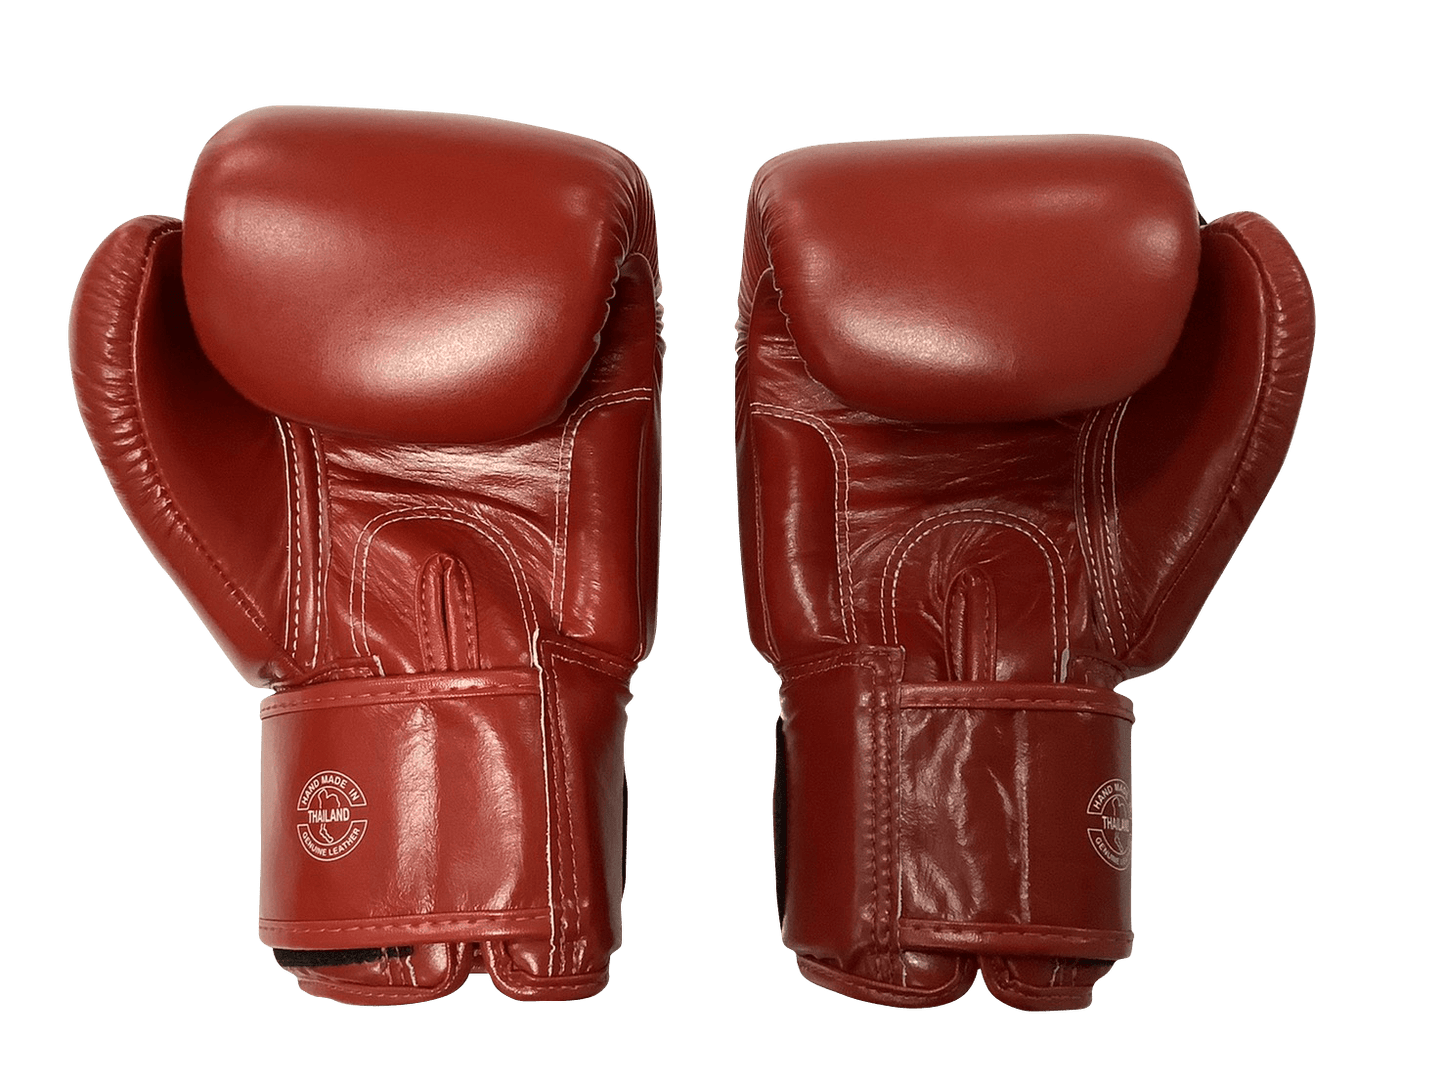 Fairtex Boxing Gloves BGV1 "ONE" Red Fairtex